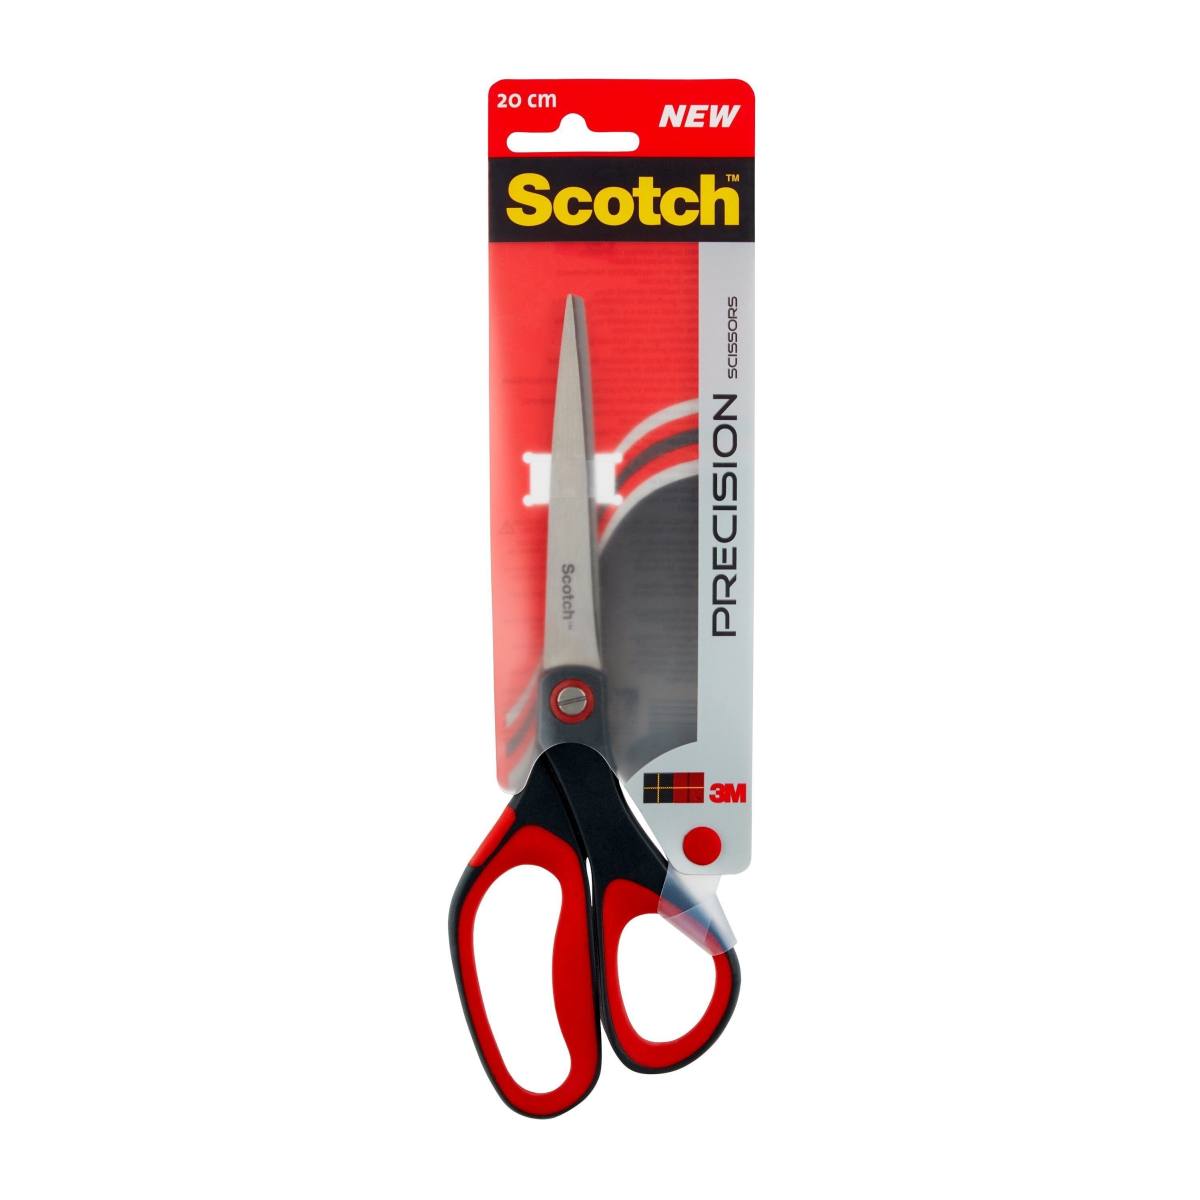 3M Scotch precision scissors red 1 per pack 20 cm